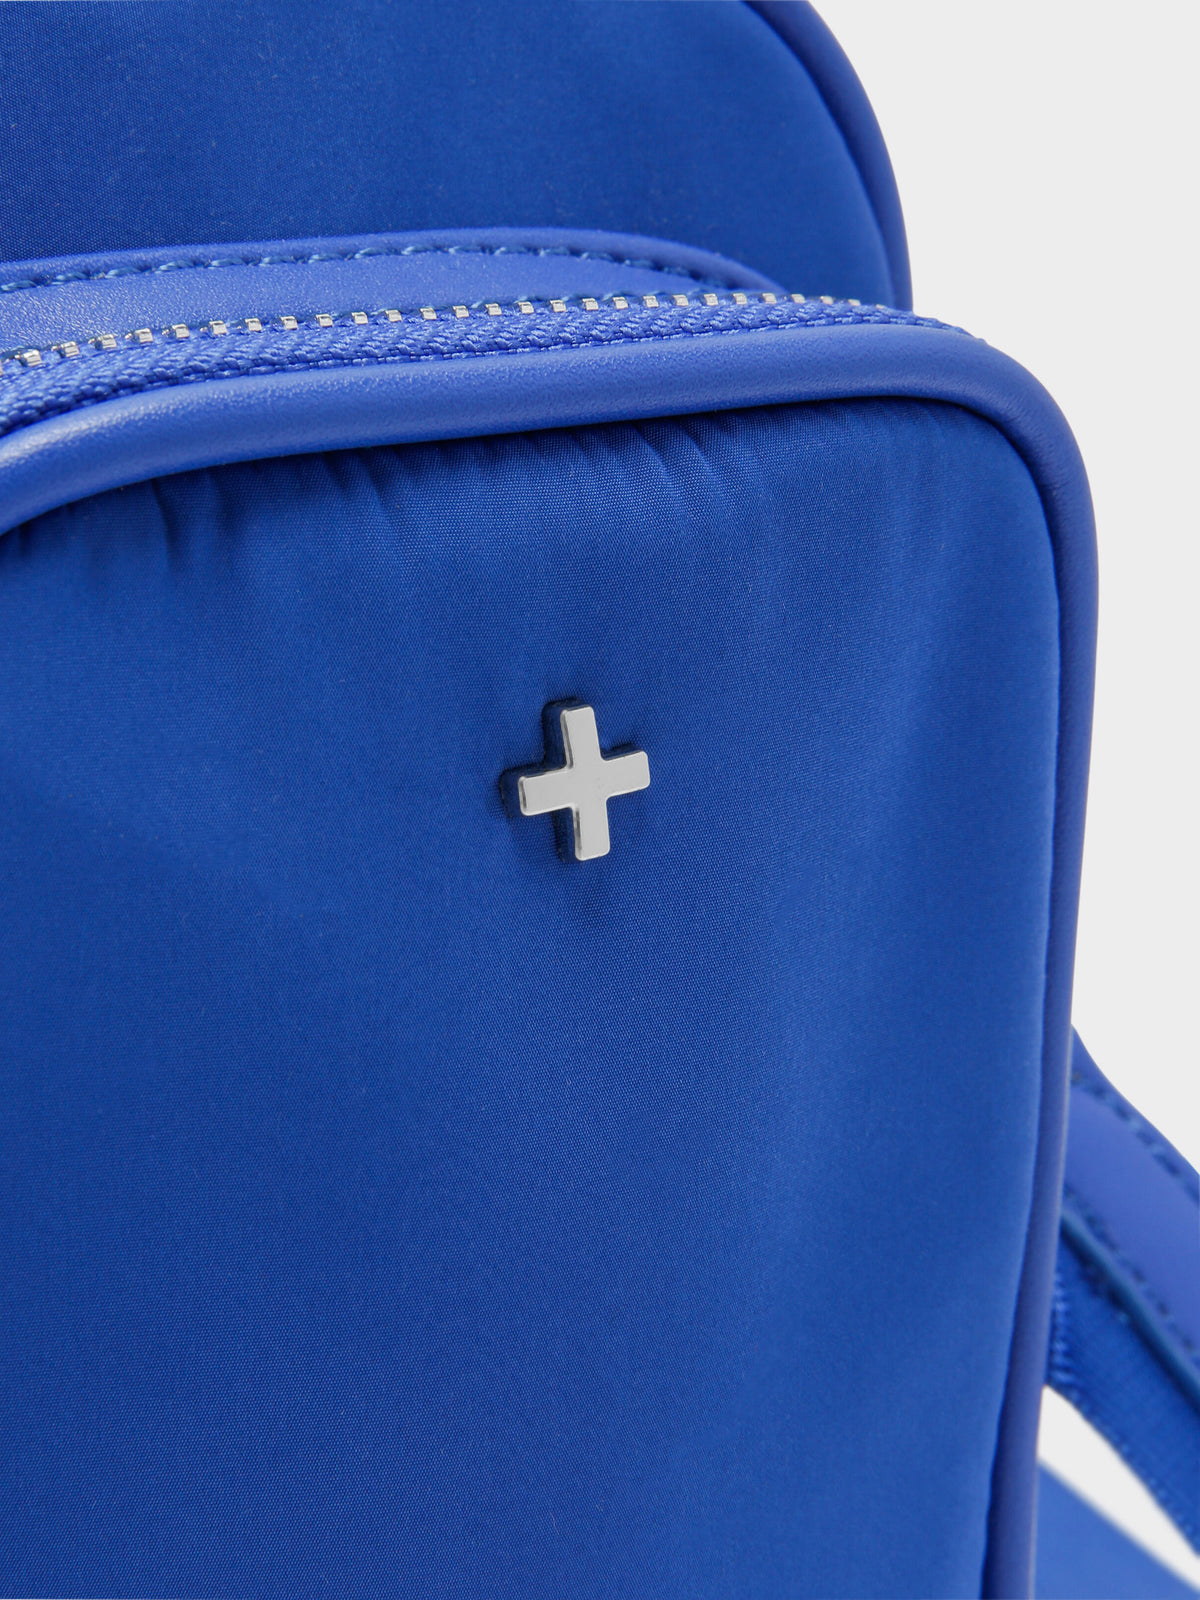 Didi Crossbody Bag in Cobalt Blue